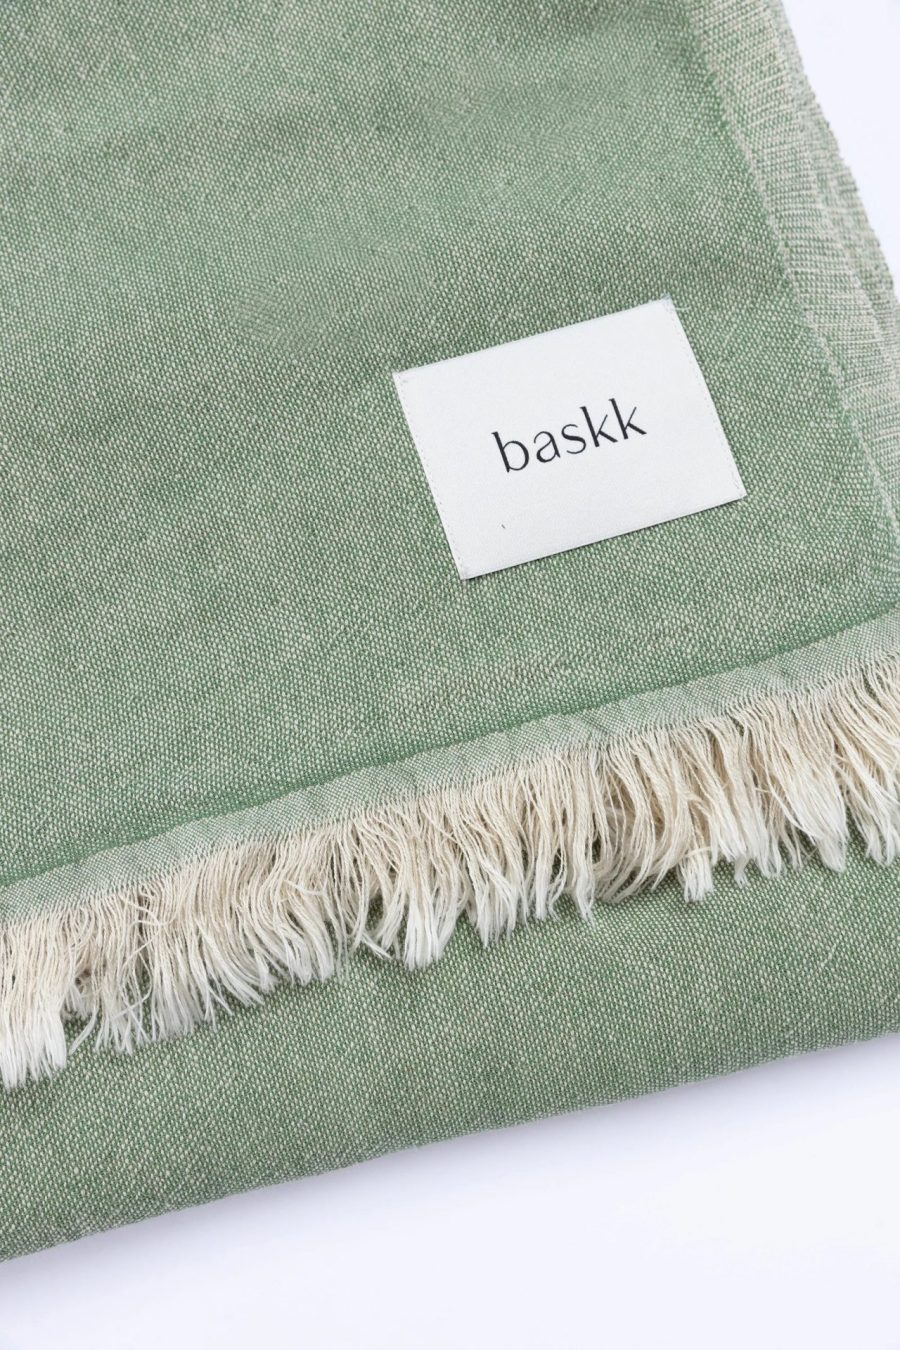 baskk everyday blanket aspen